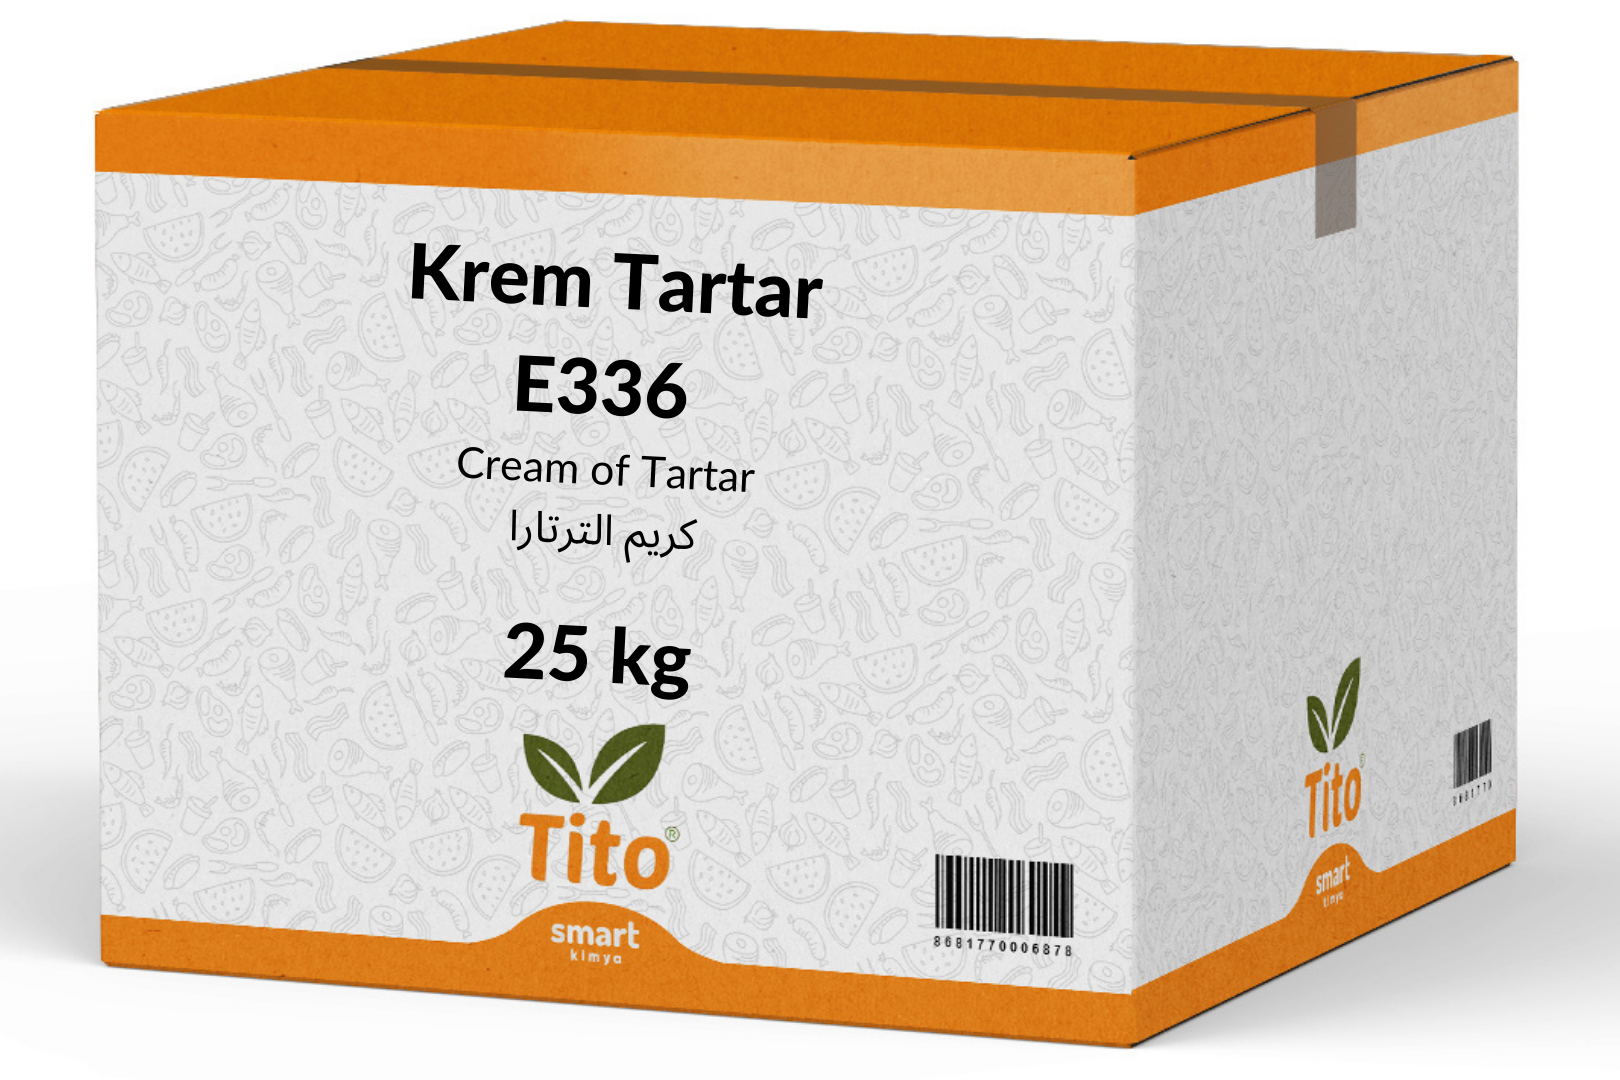 Krem Tartar E336 25 kg